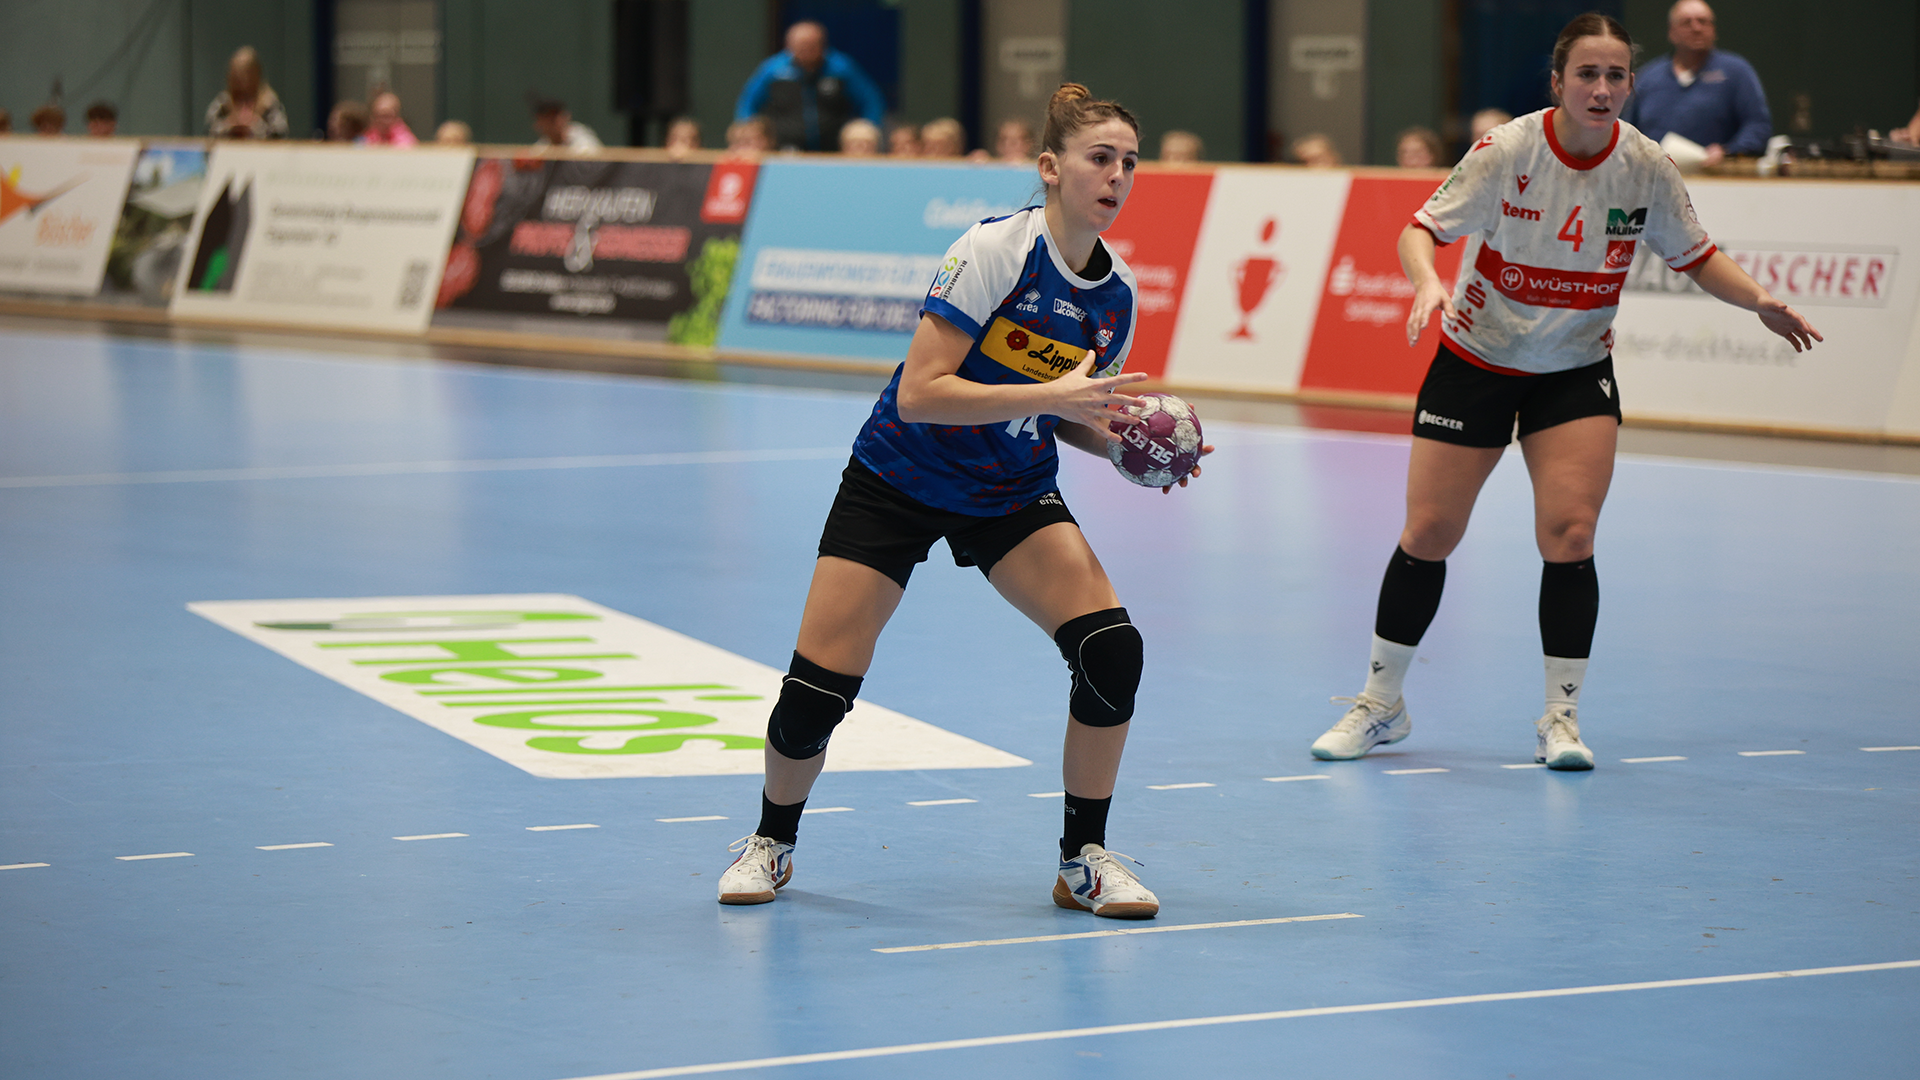 Handball Bundesliga Frauen